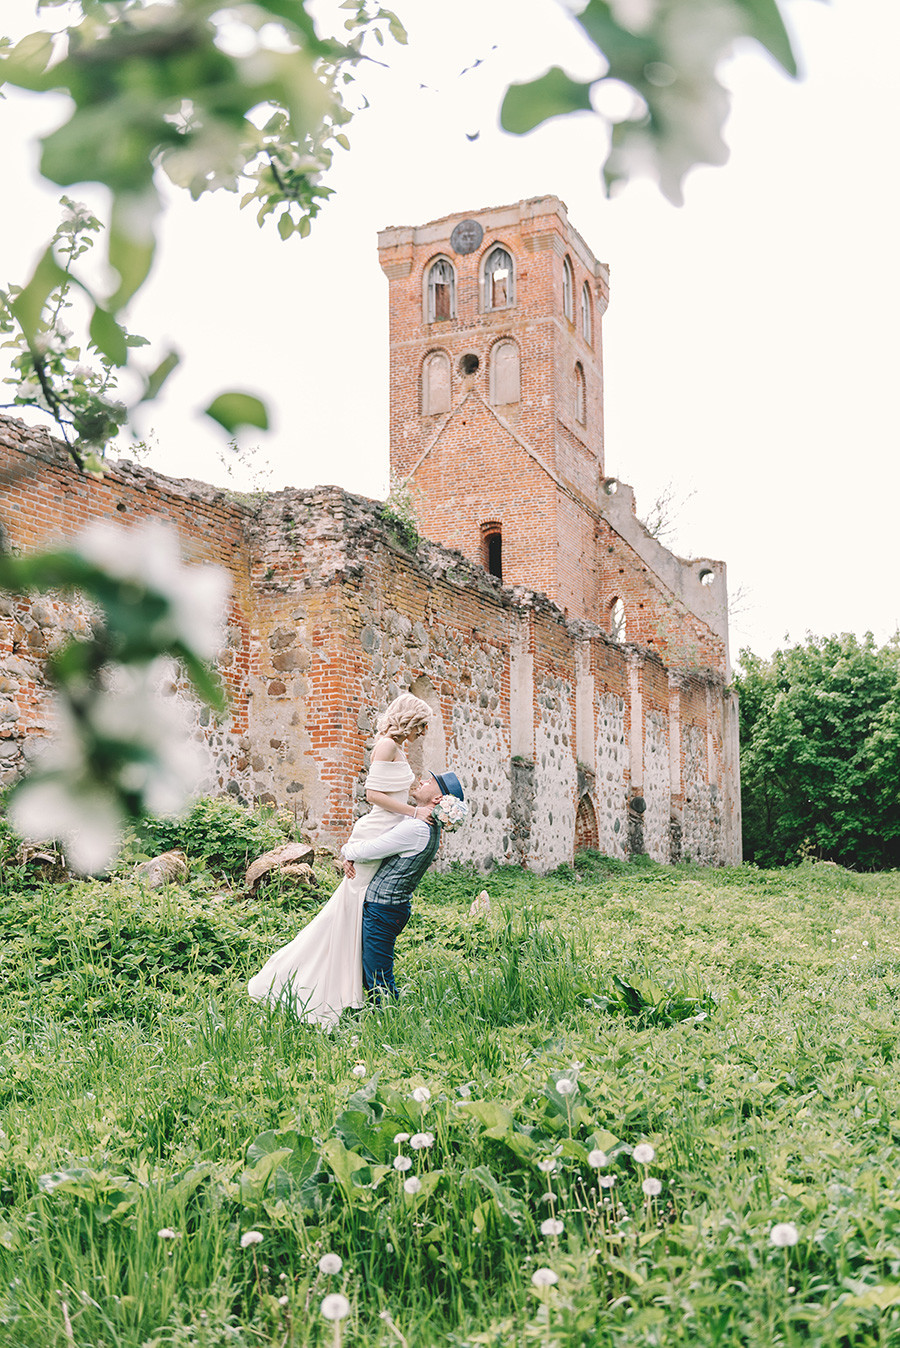 Mariage dans les ruines de l'église Sainte-Barbara à Povounden (Khrabrovo)